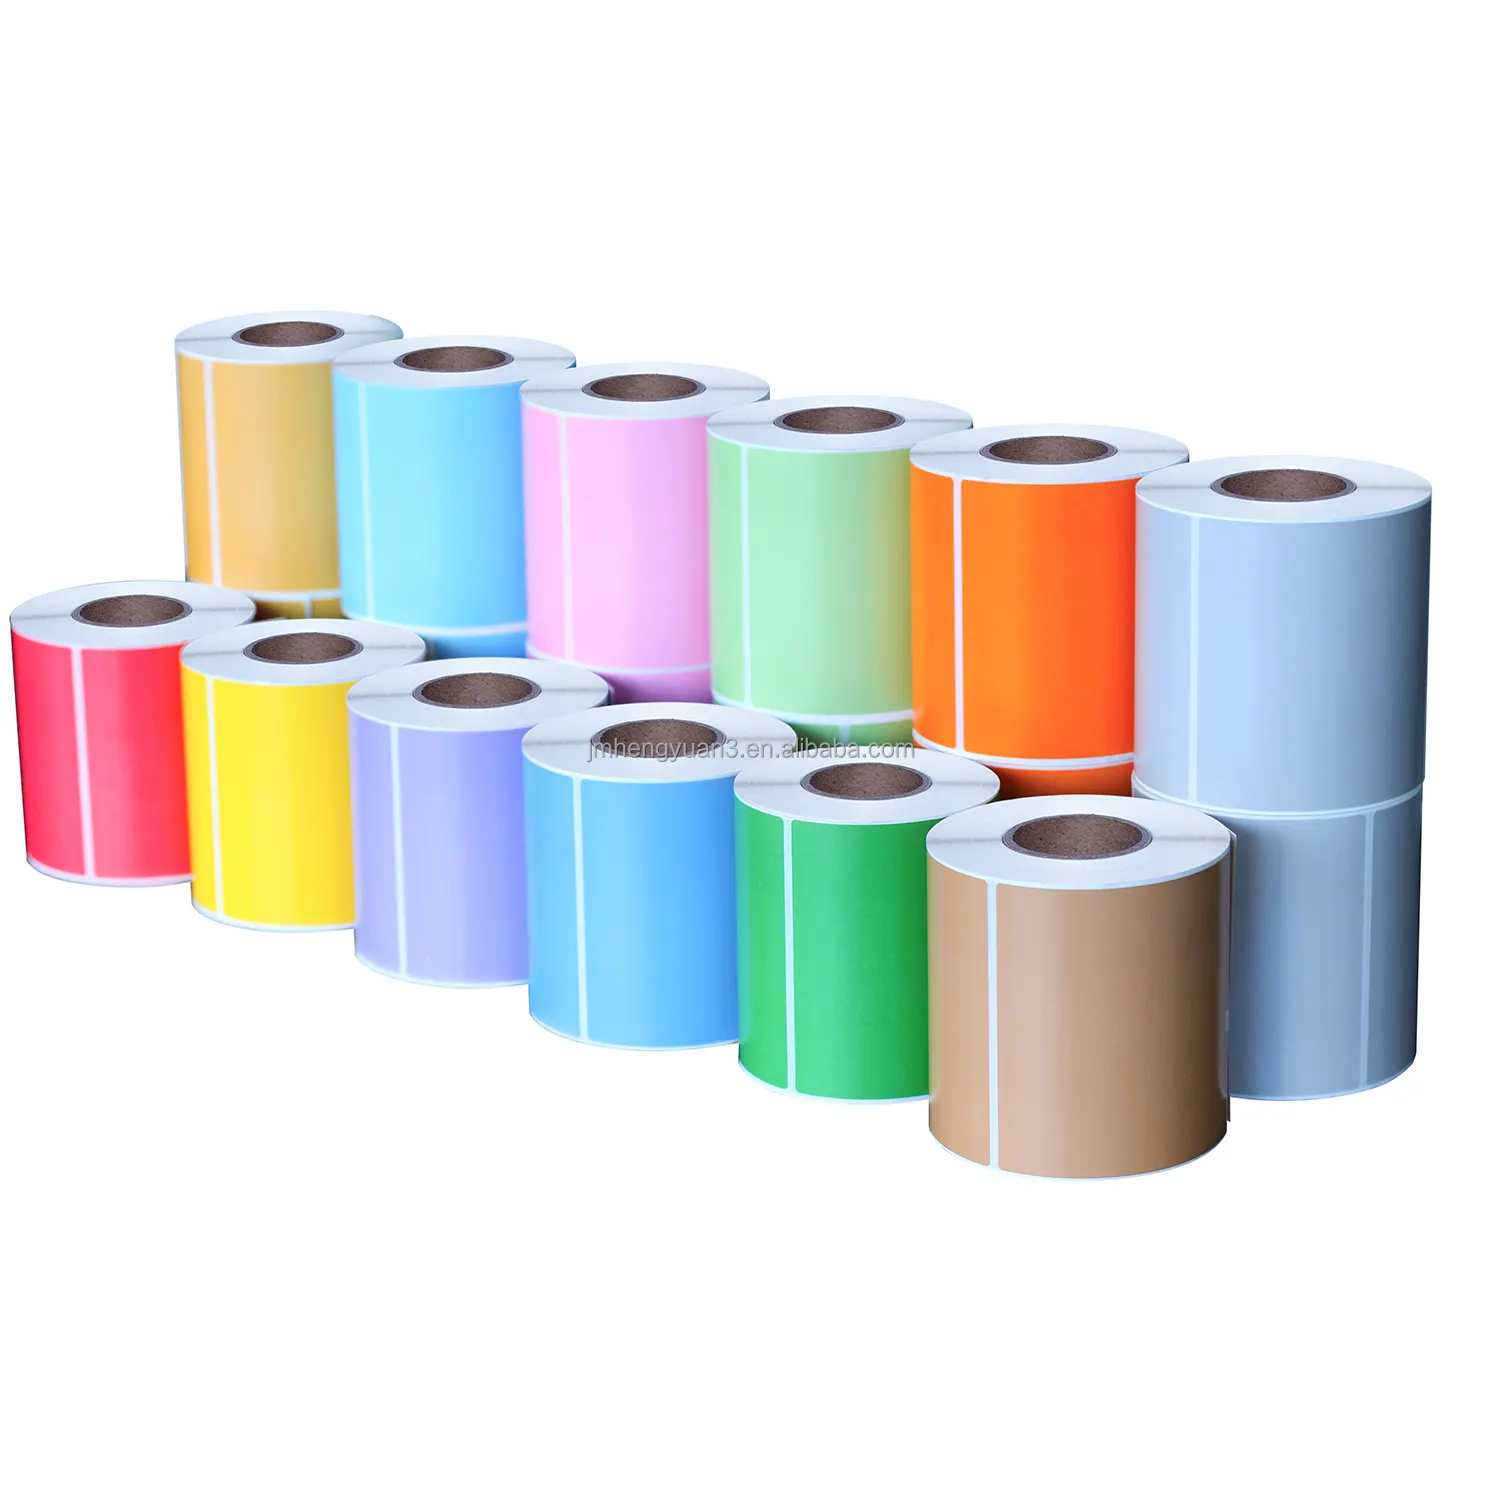 Etiqueta de impressão de rolo de papel adesivo de transferência térmica colorida 4x6 polegadas